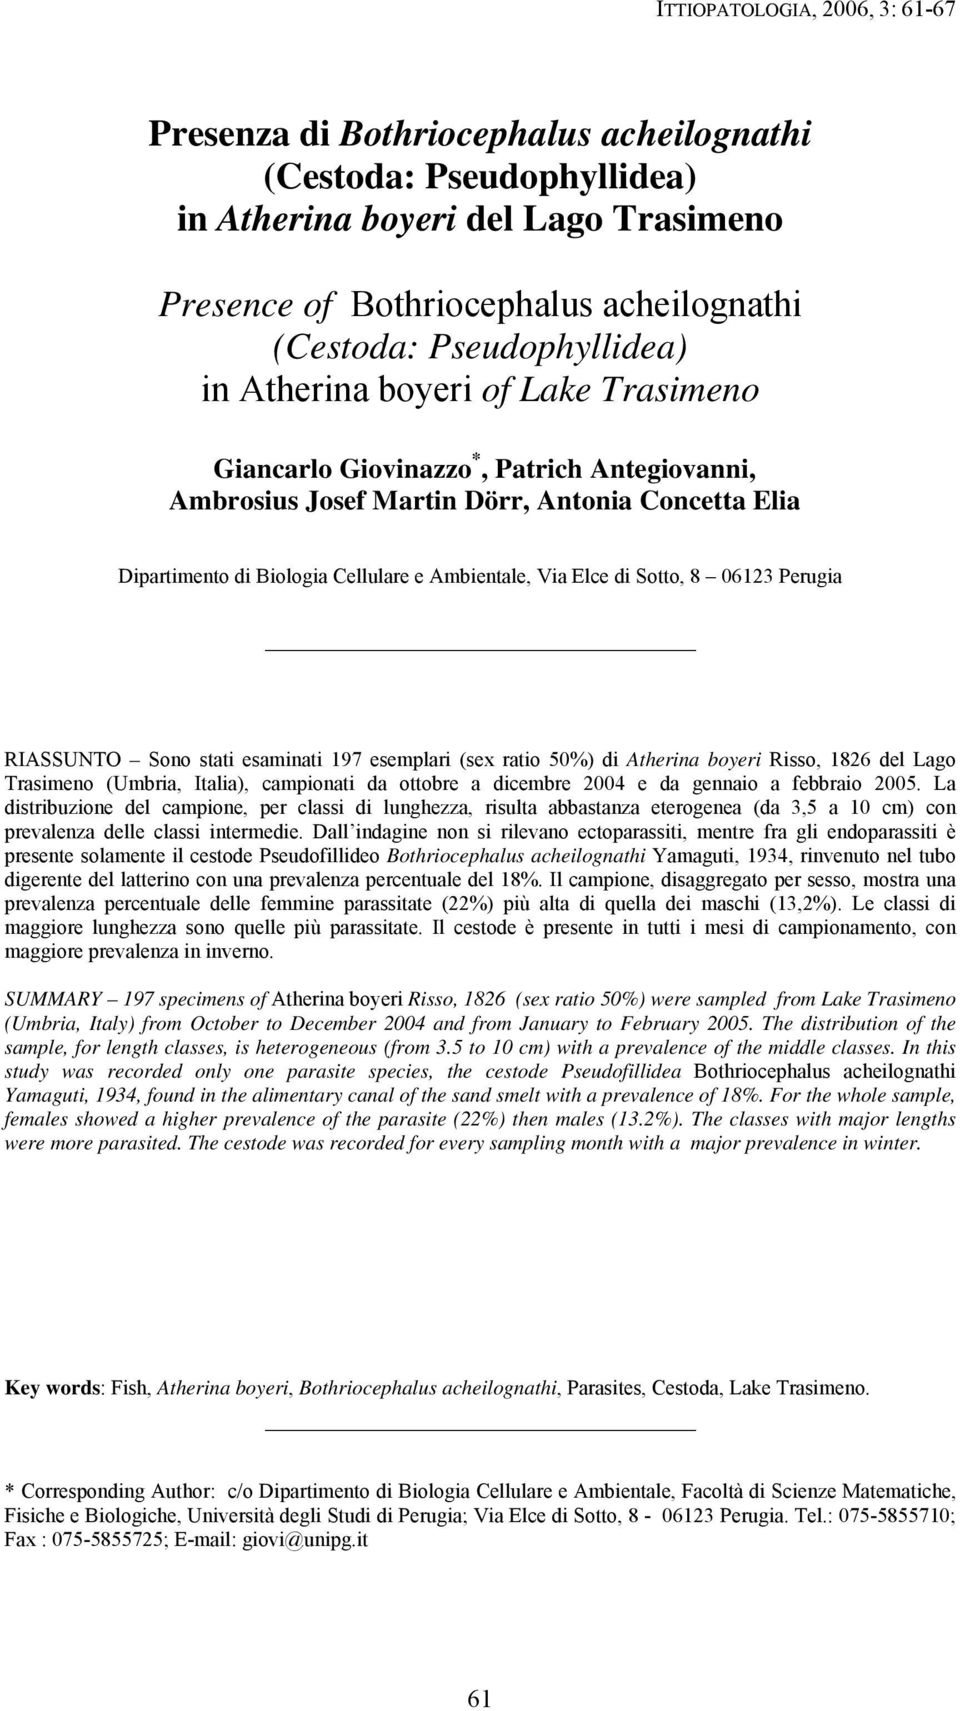 RIASSUNTO Sono stati esaminati 197 esemplari (sex ratio 50%) di Atherina boyeri Risso, 1826 del Lago Trasimeno (Umbria, Italia), campionati da ottobre a dicembre 2004 e da gennaio a febbraio 2005.